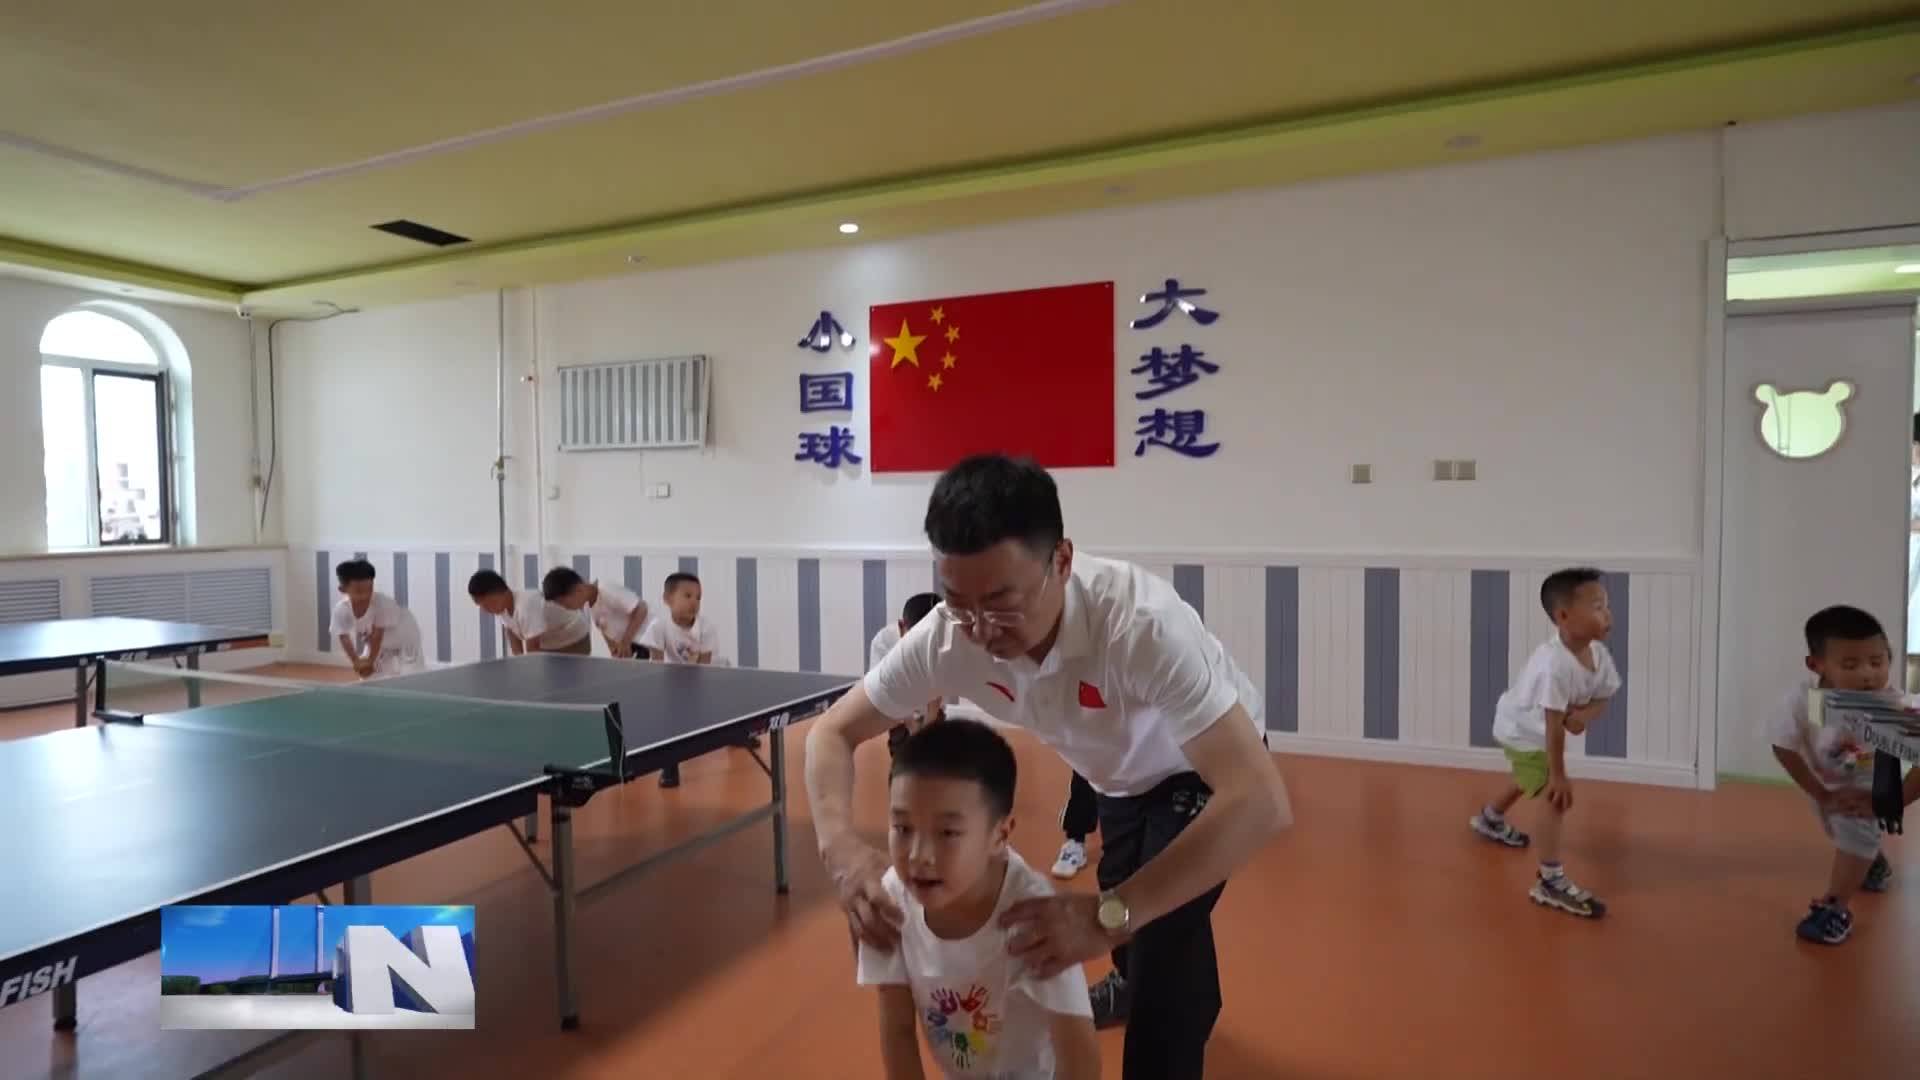 乒乓球进幼儿园 助力孩子健康成长